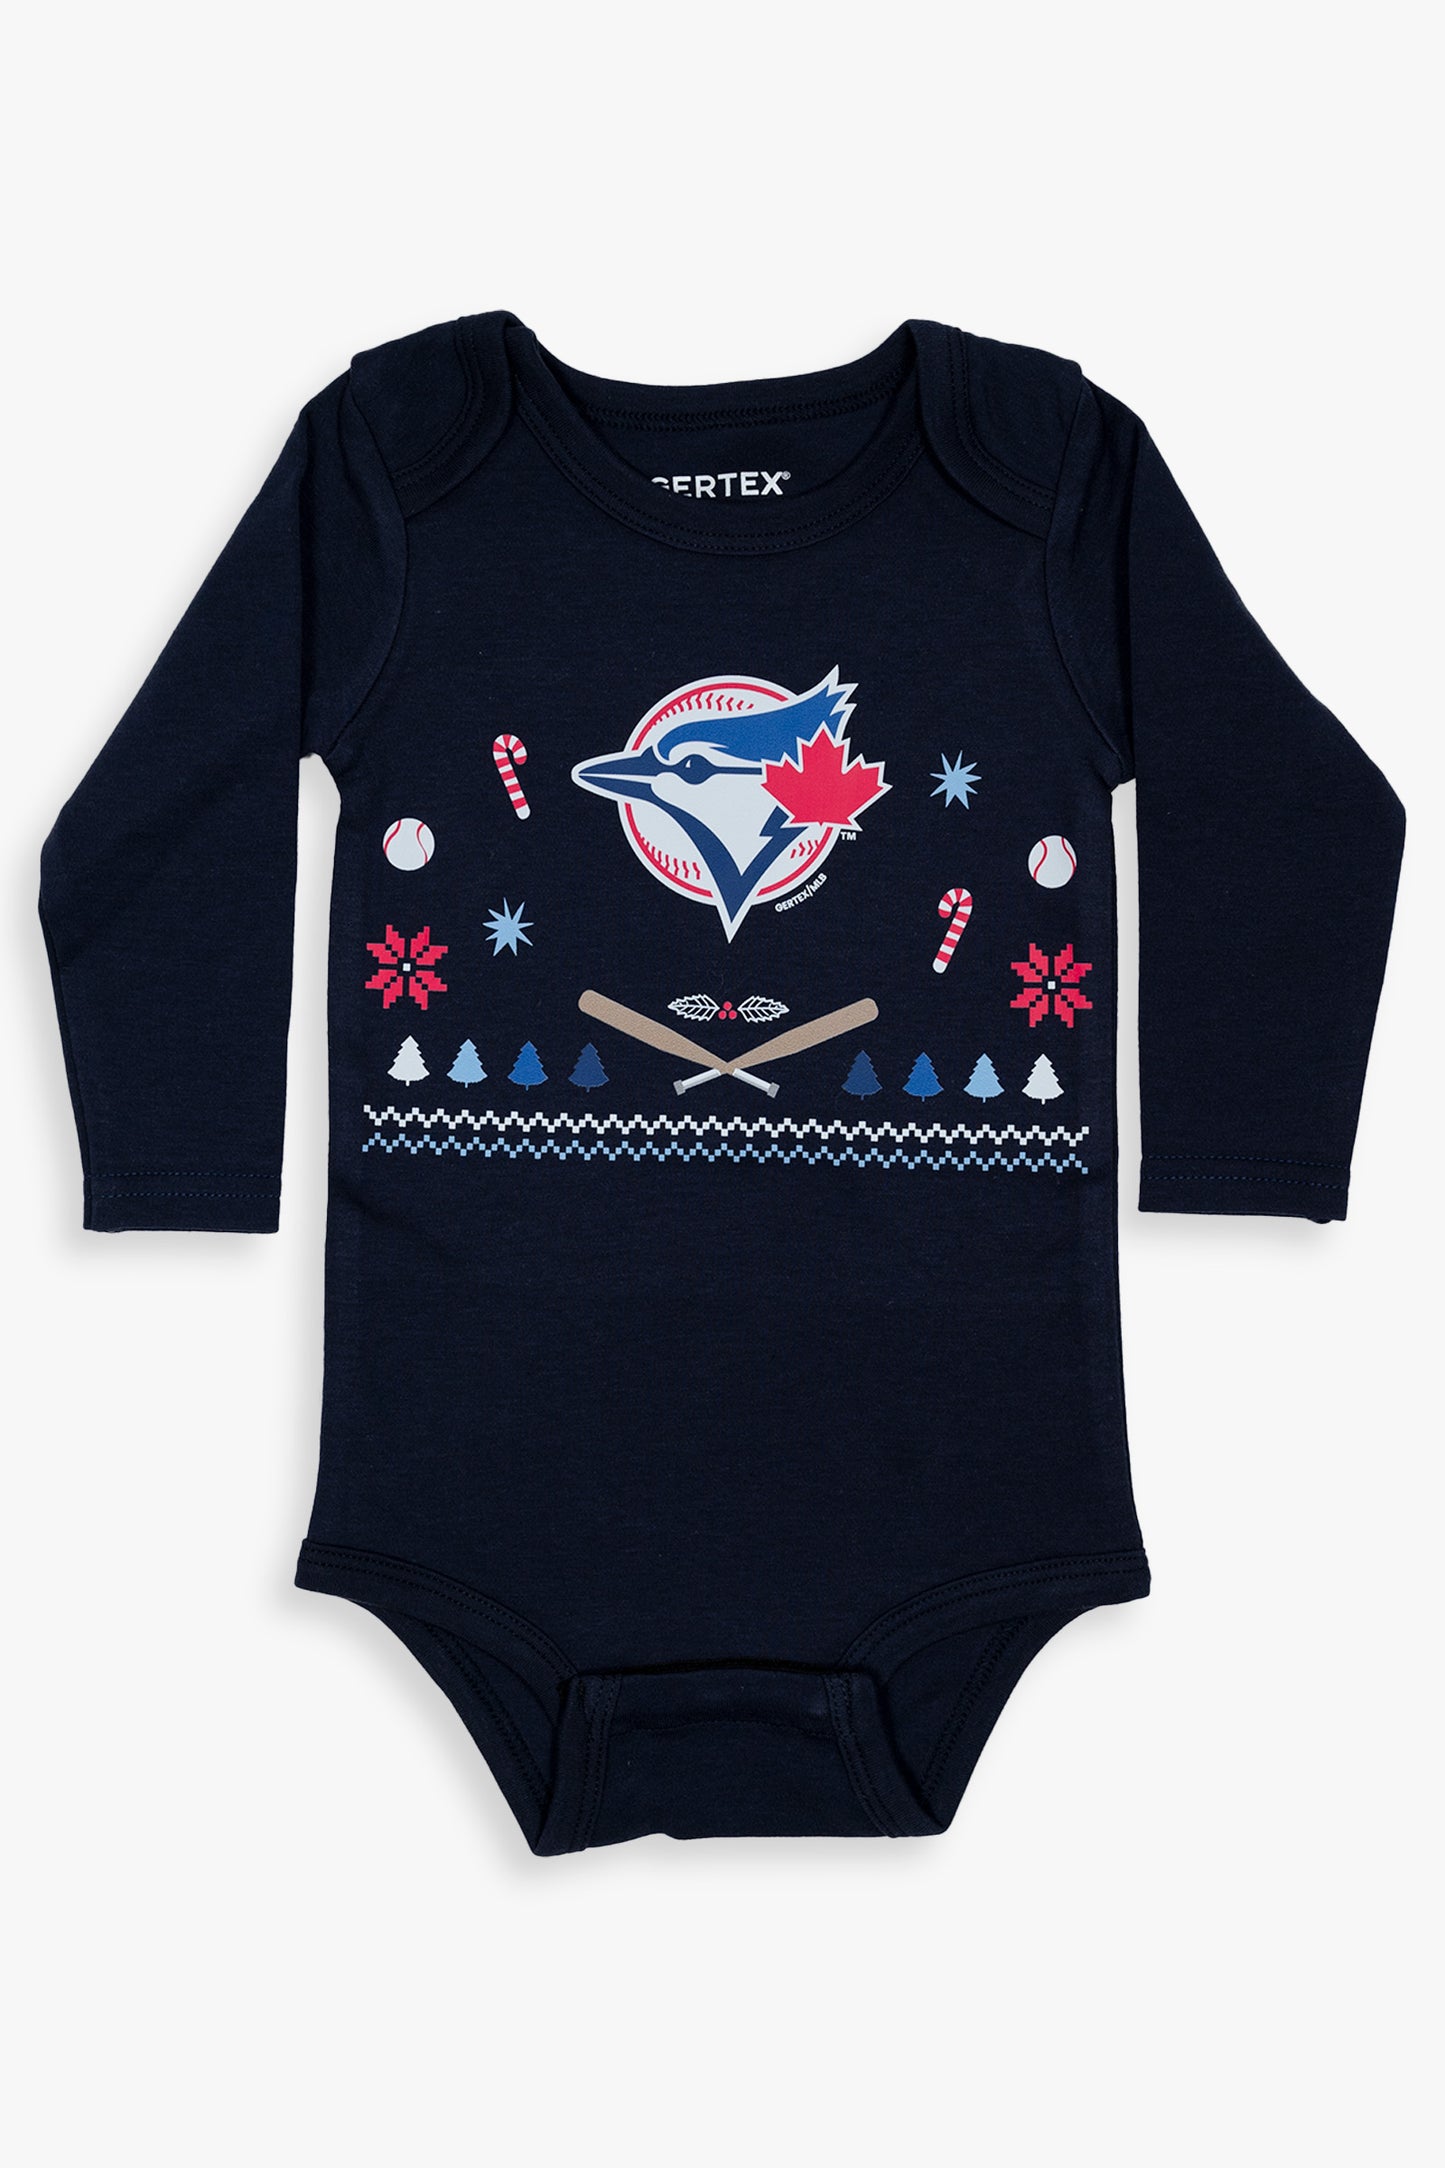 MLB Toronto Blue Jays Ugly Holiday 100% Organic Long Sleeve Baby Bodysuit